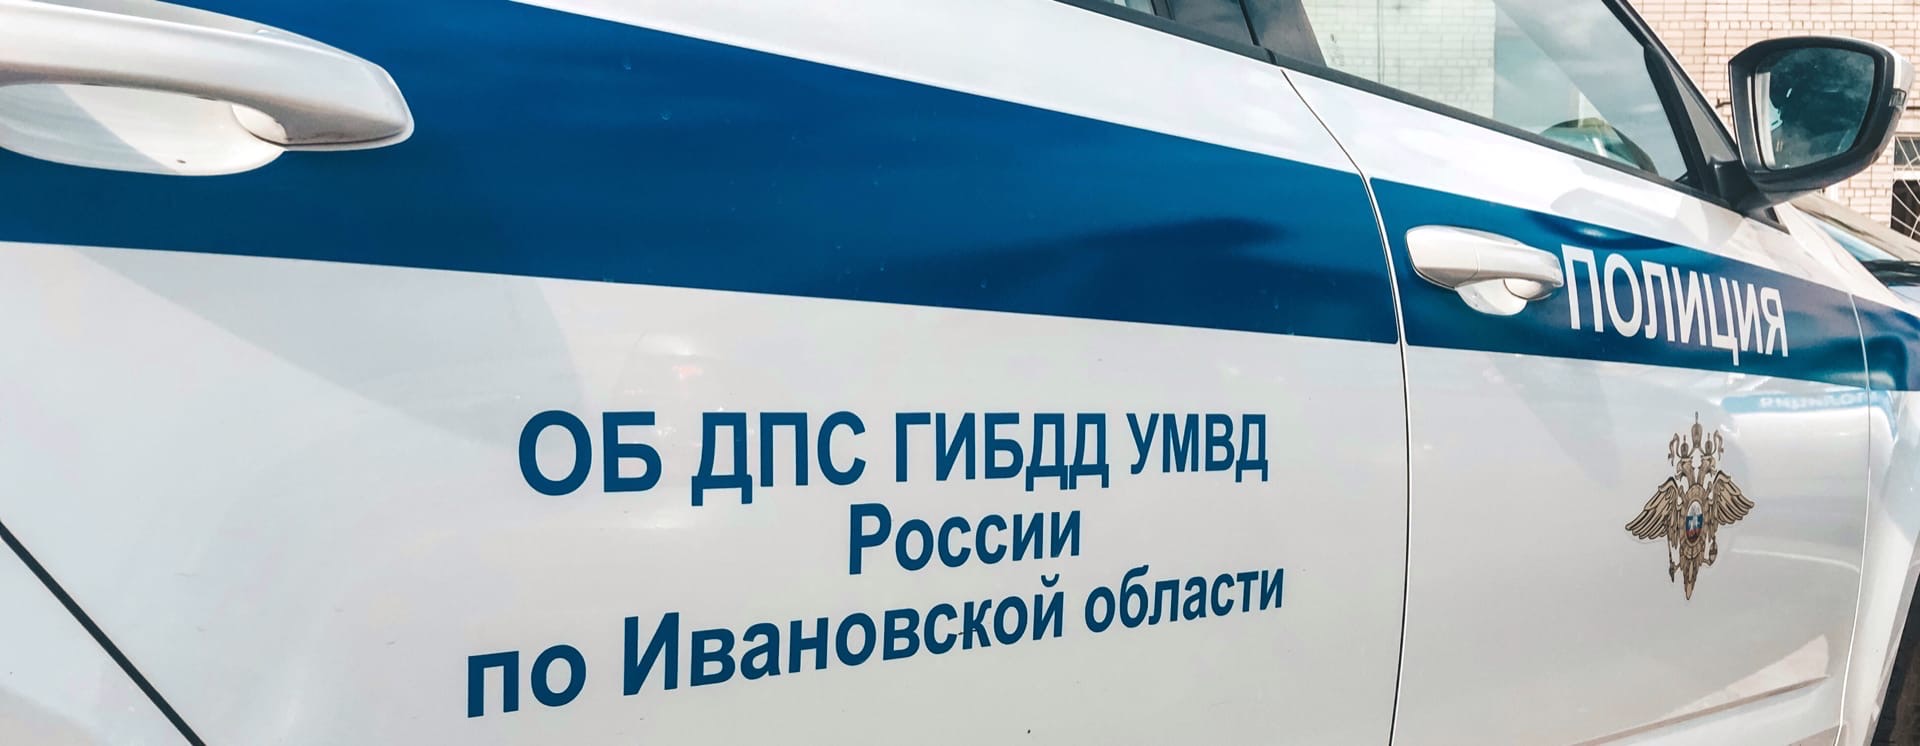 В Иванове автомобилист сбил 10-летнего мальчика